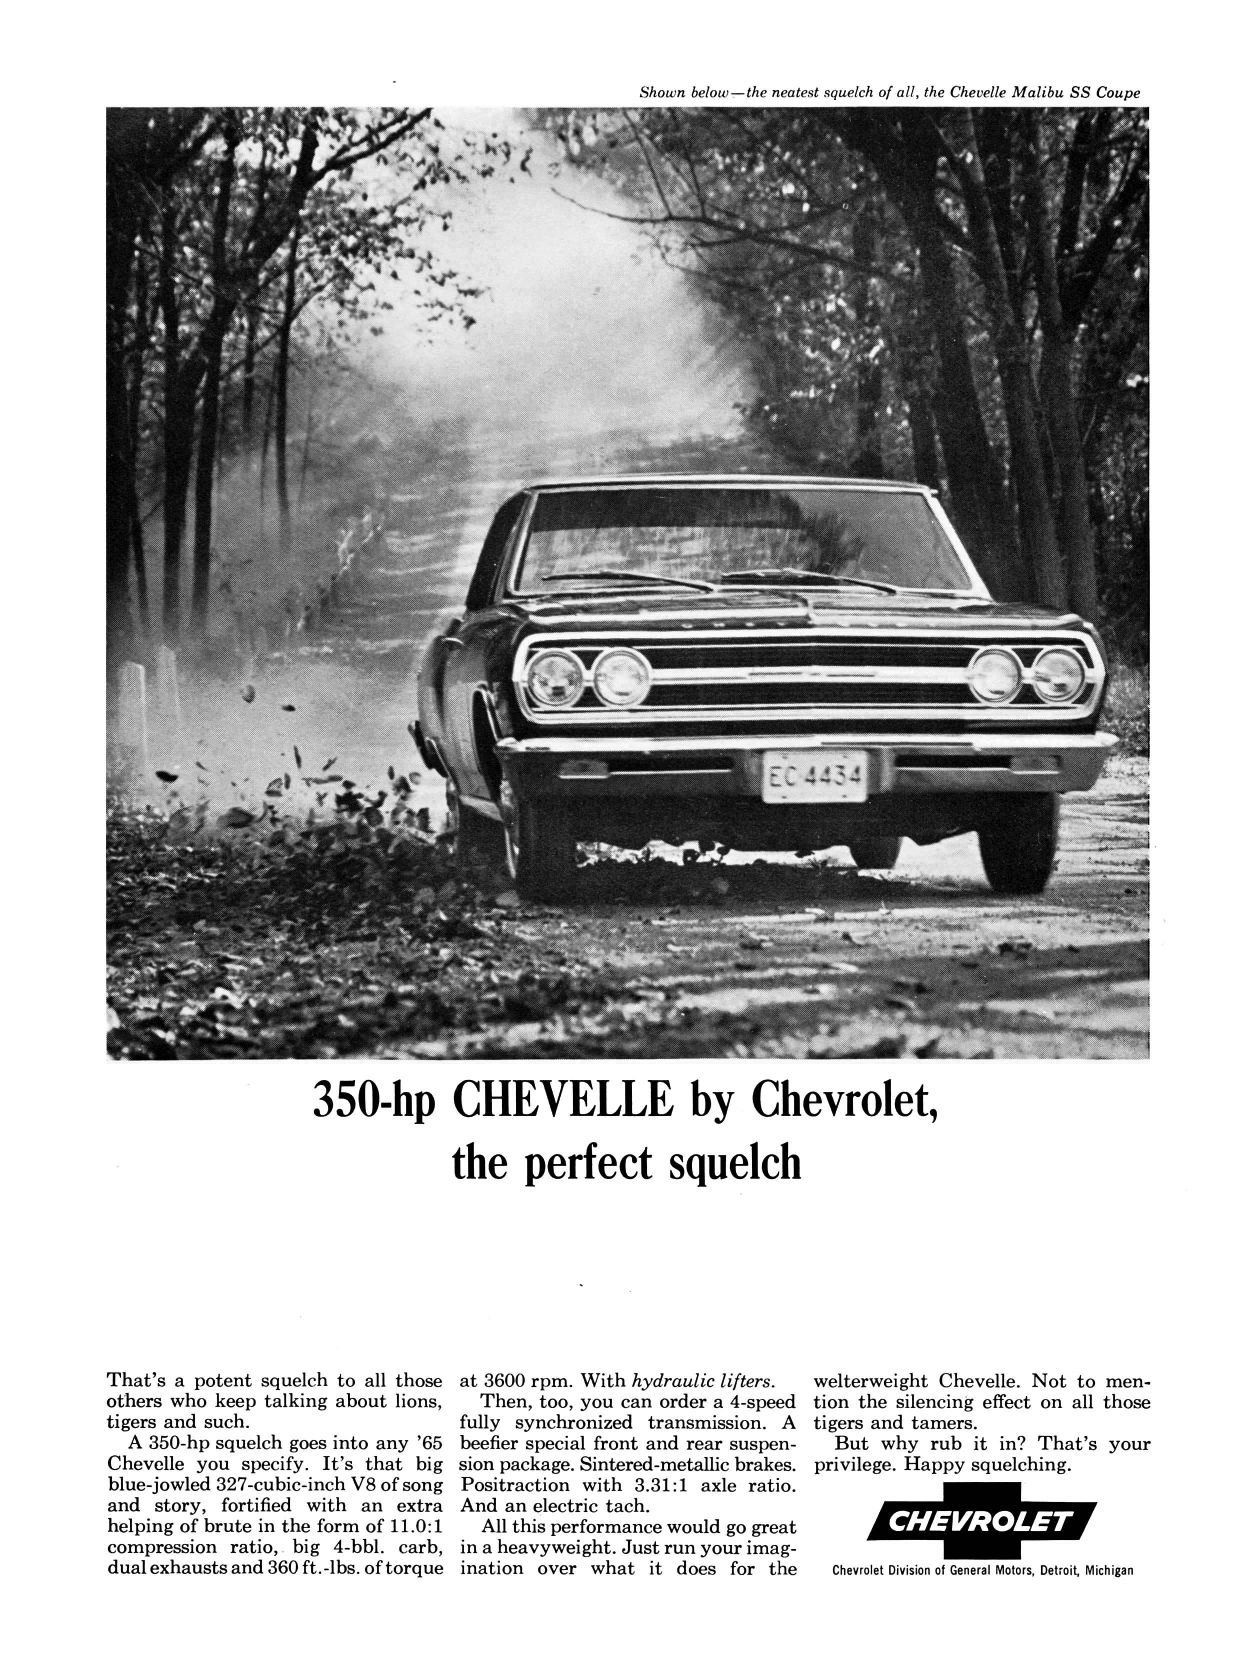 1965 Chevrolet Ad, Chevelle Malibu Super Sport Coupe "The Perfect Squelch"